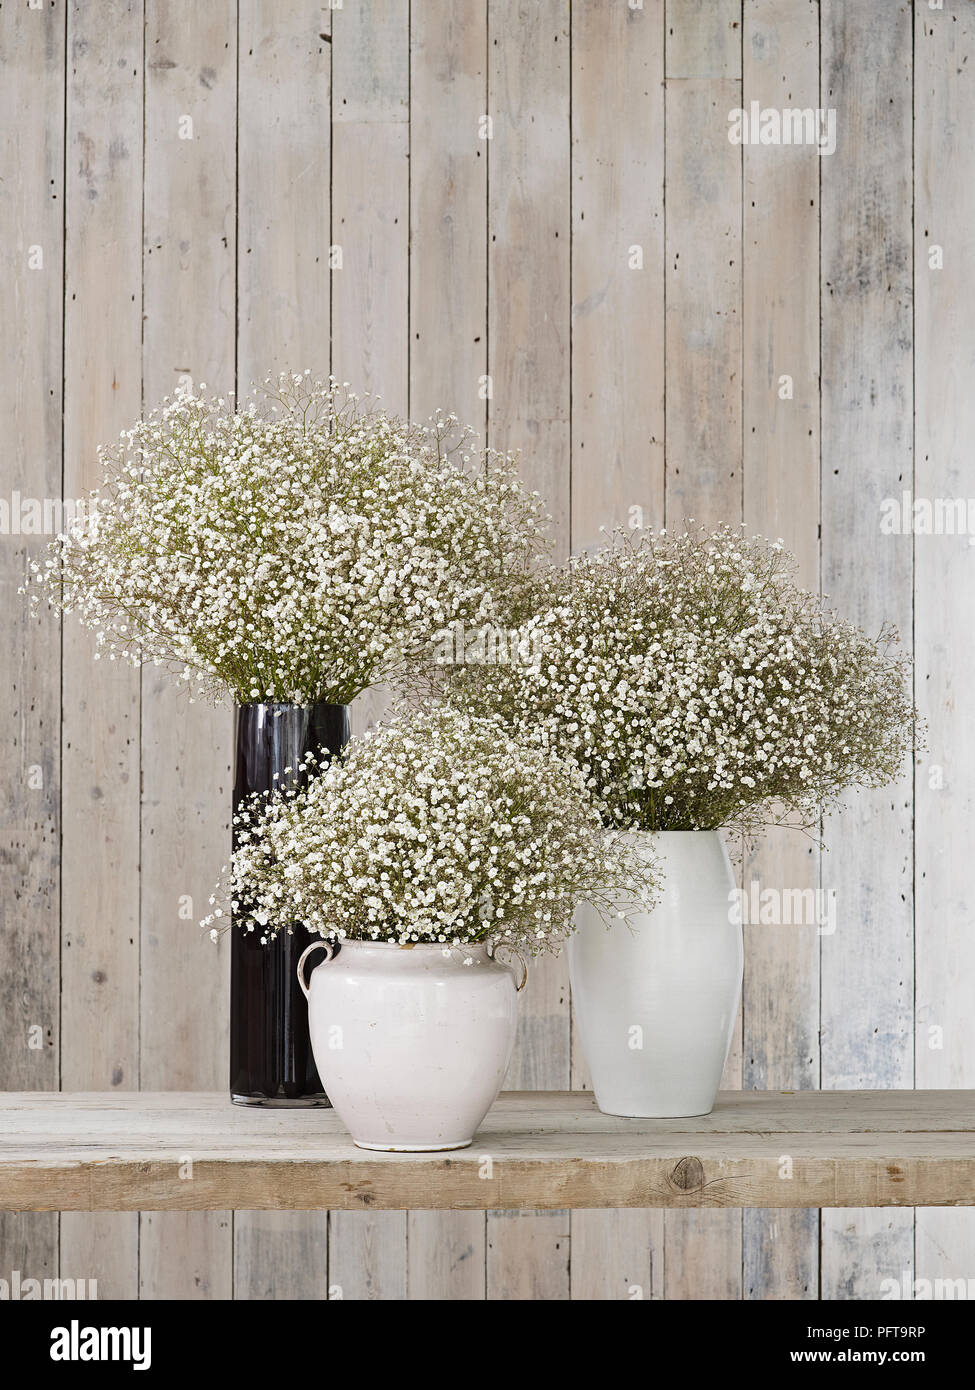 Gypsophila fiori in vasi di diverse forme, contro lo sfondo di legno Foto Stock